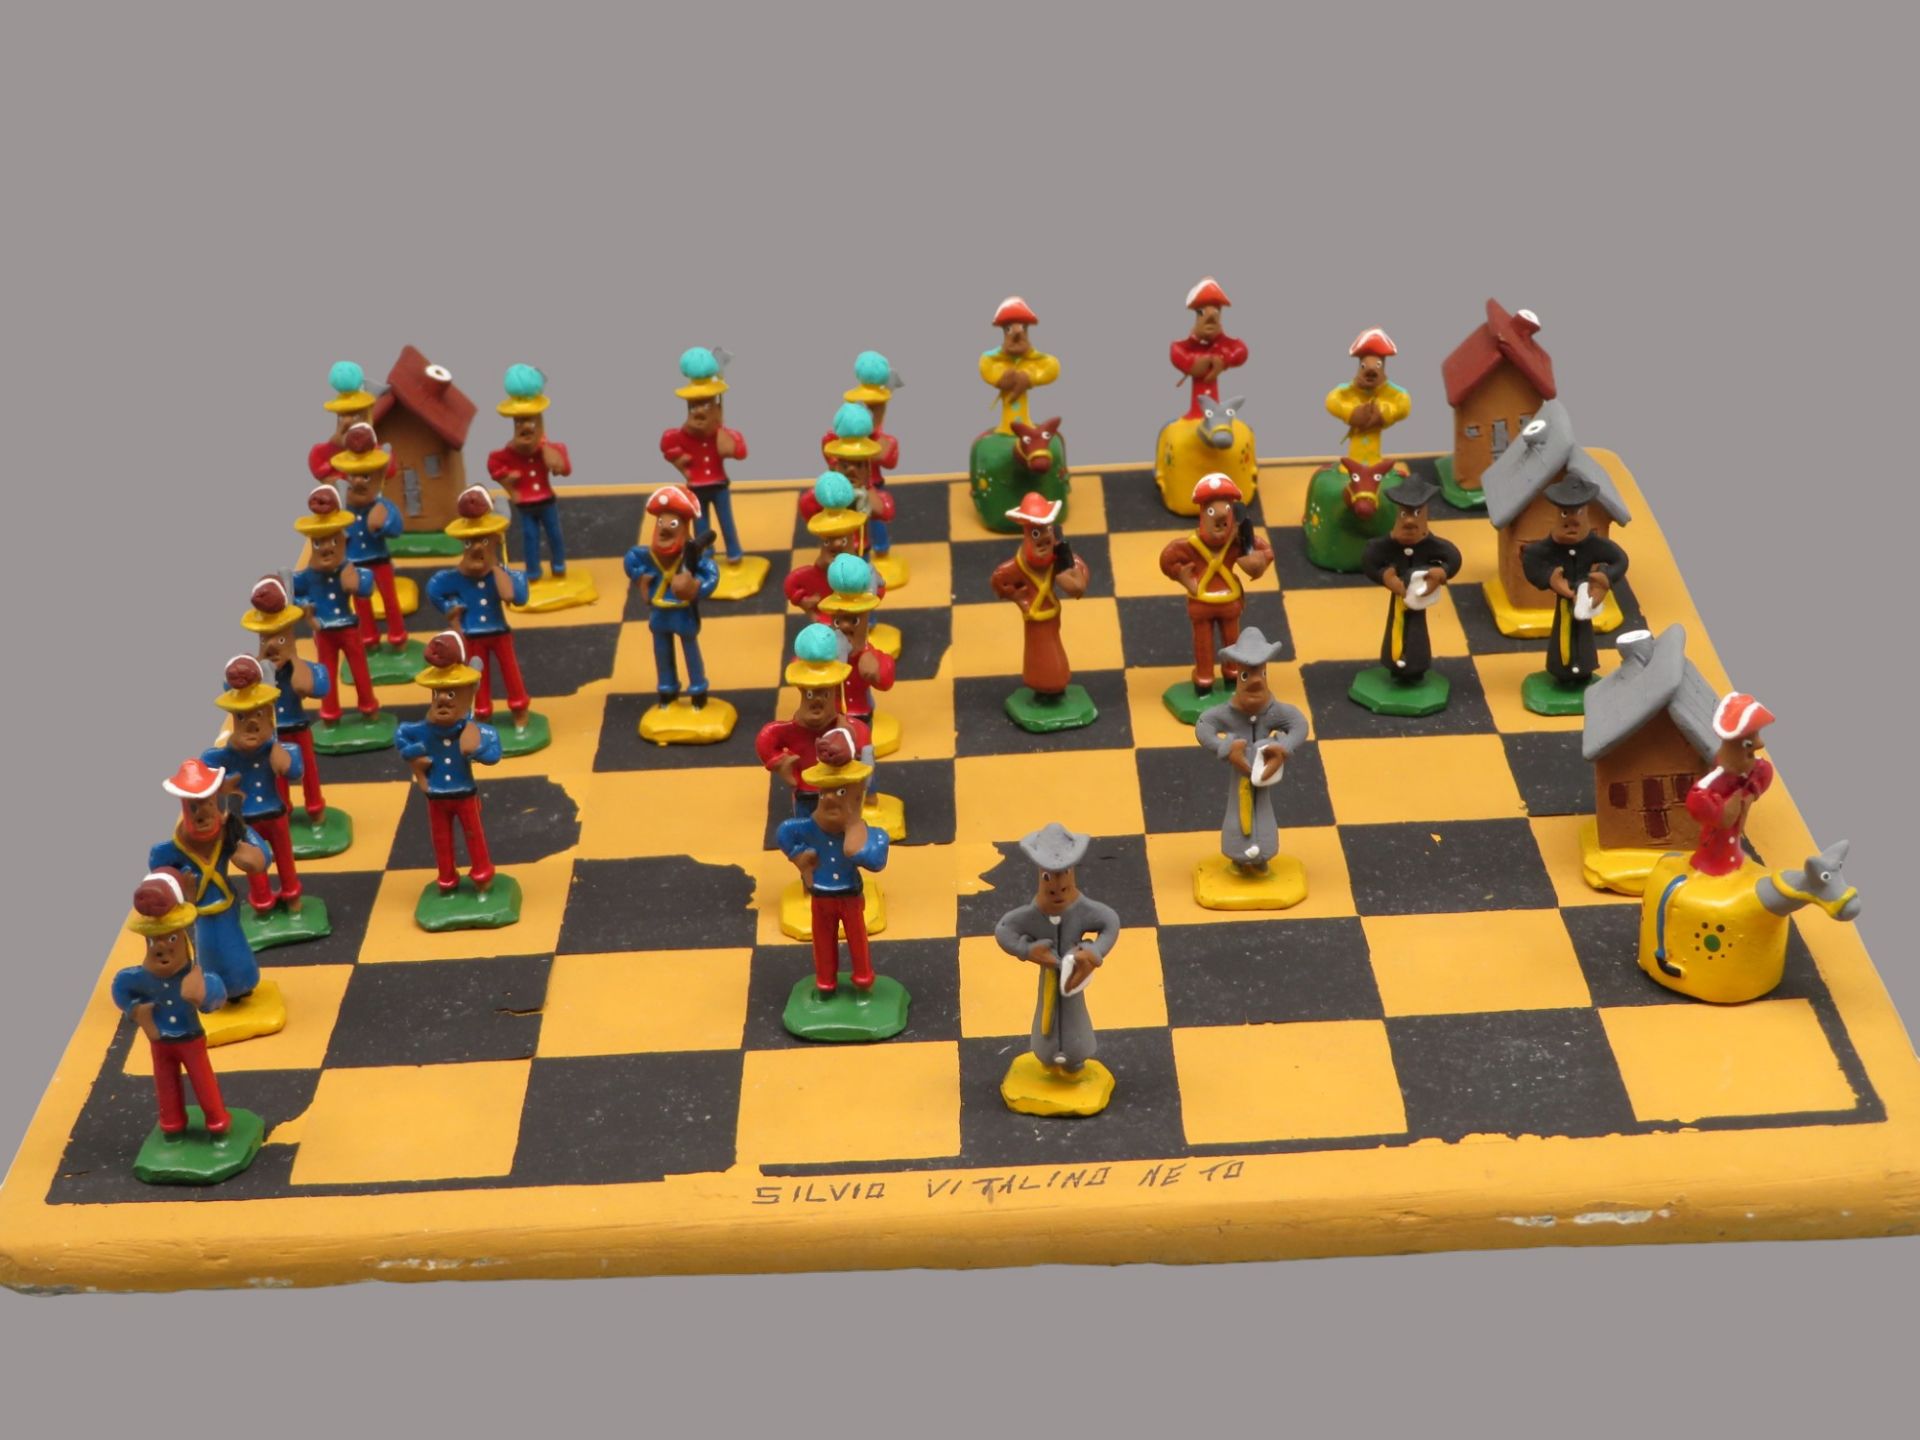 Vitalino Neto, Silvio, Brasilianischer Künstler, Schachspiel mit 32 Figuren, Figuren und Brett Kera